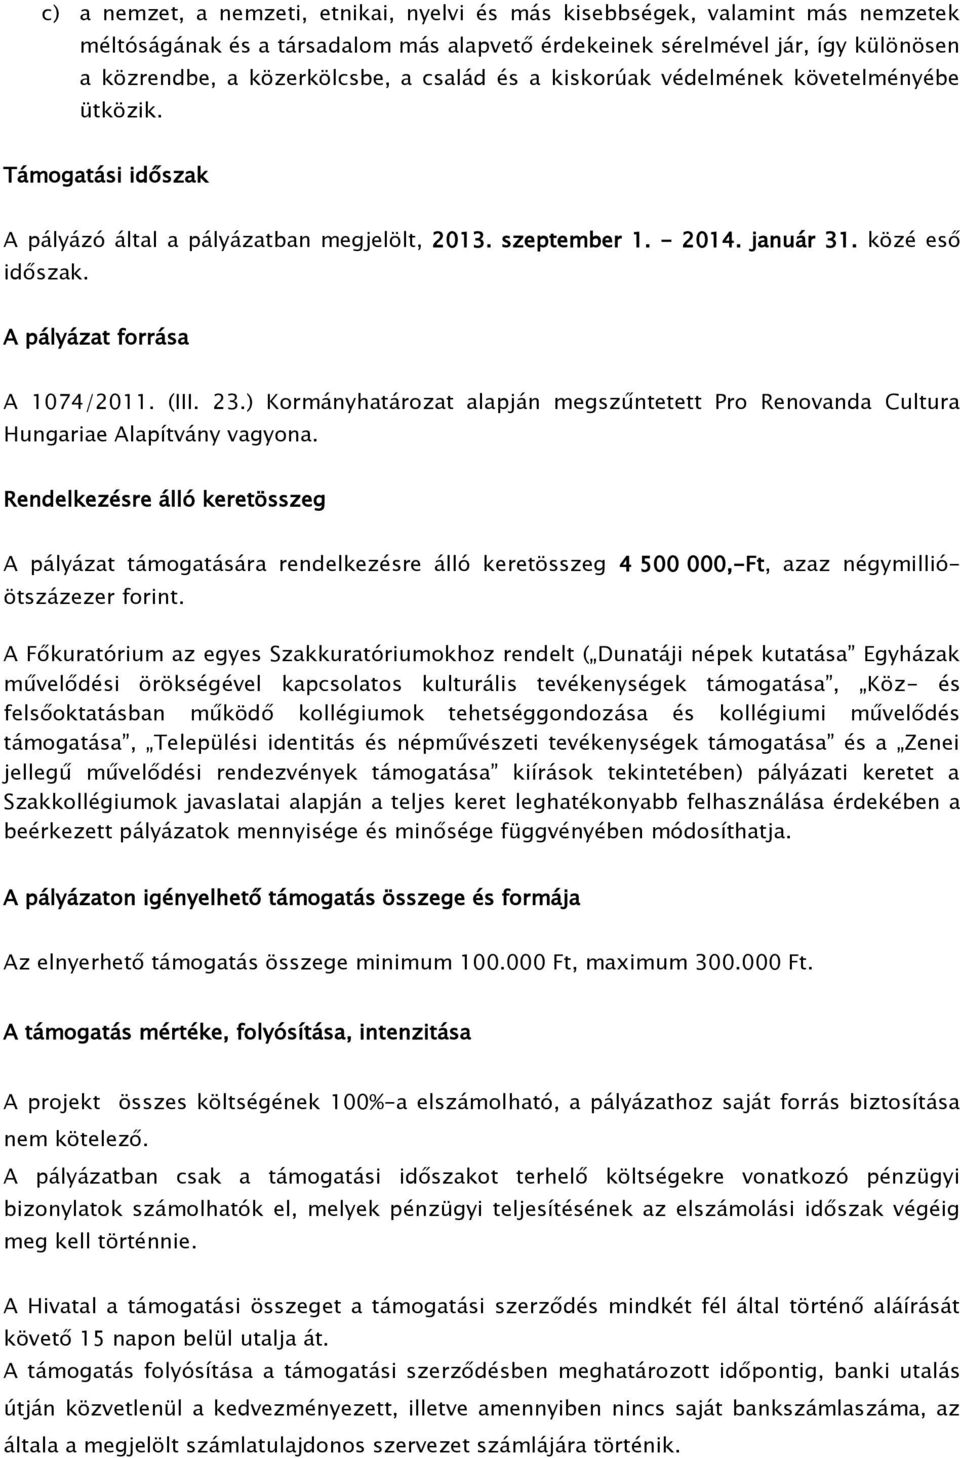 A pályázat forrása A 1074/2011. (III. 23.) Kormányhatározat alapján megszűntetett Pro Renovanda Cultura Hungariae Alapítvány vagyona.